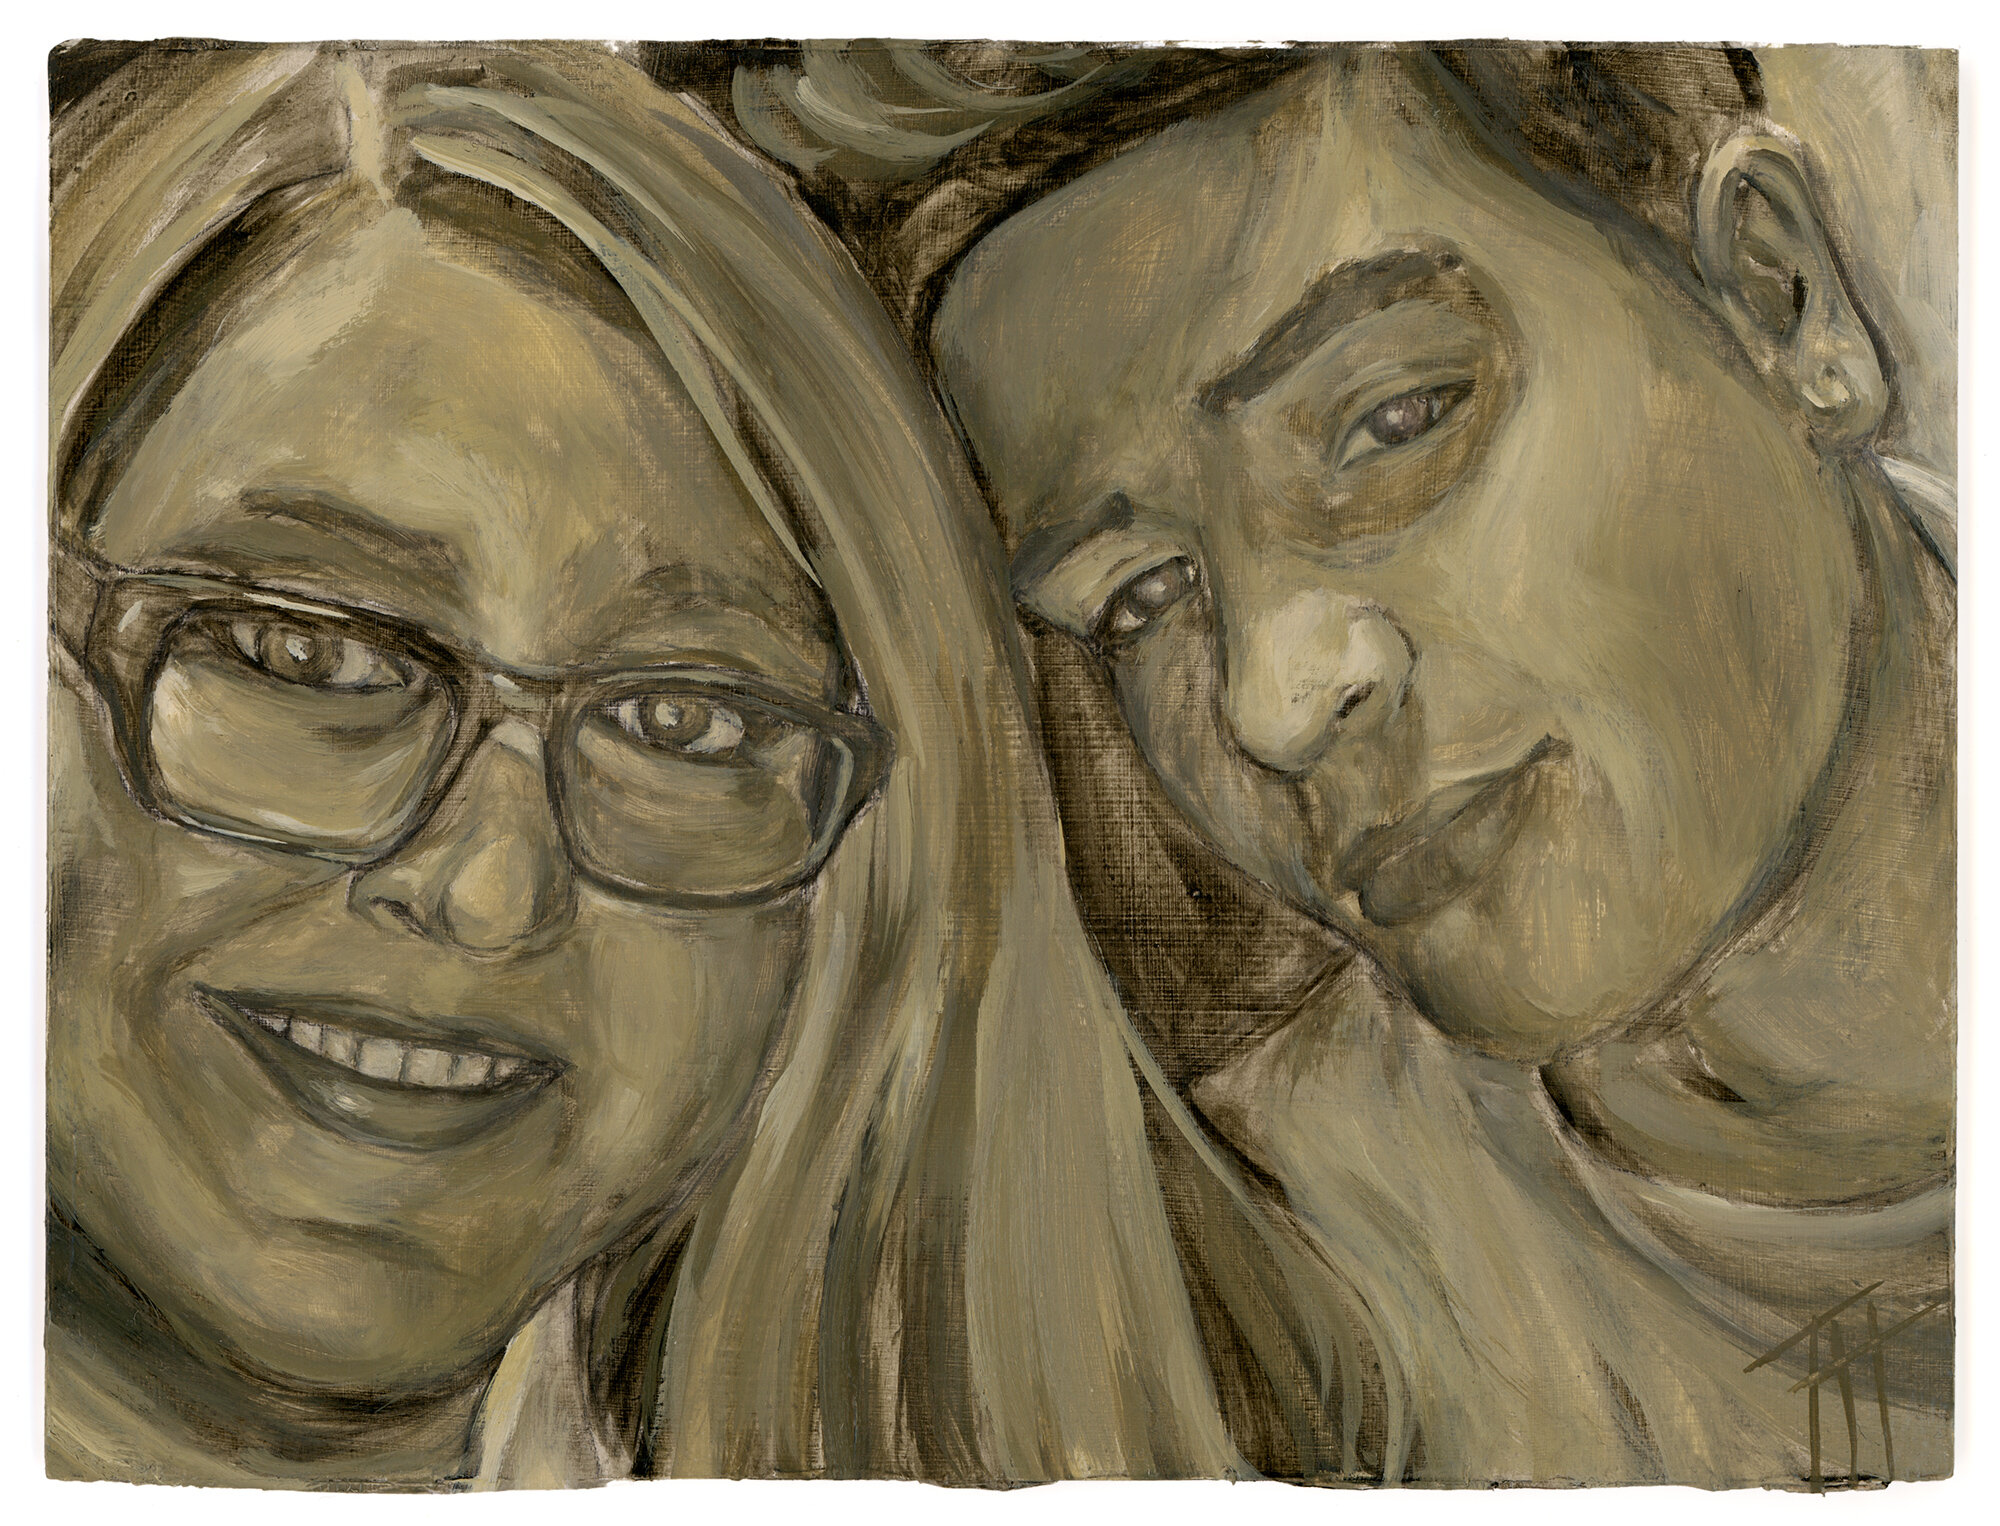  Natalie &amp; Sami, 2020.  6x8 in. Oil on paper.  